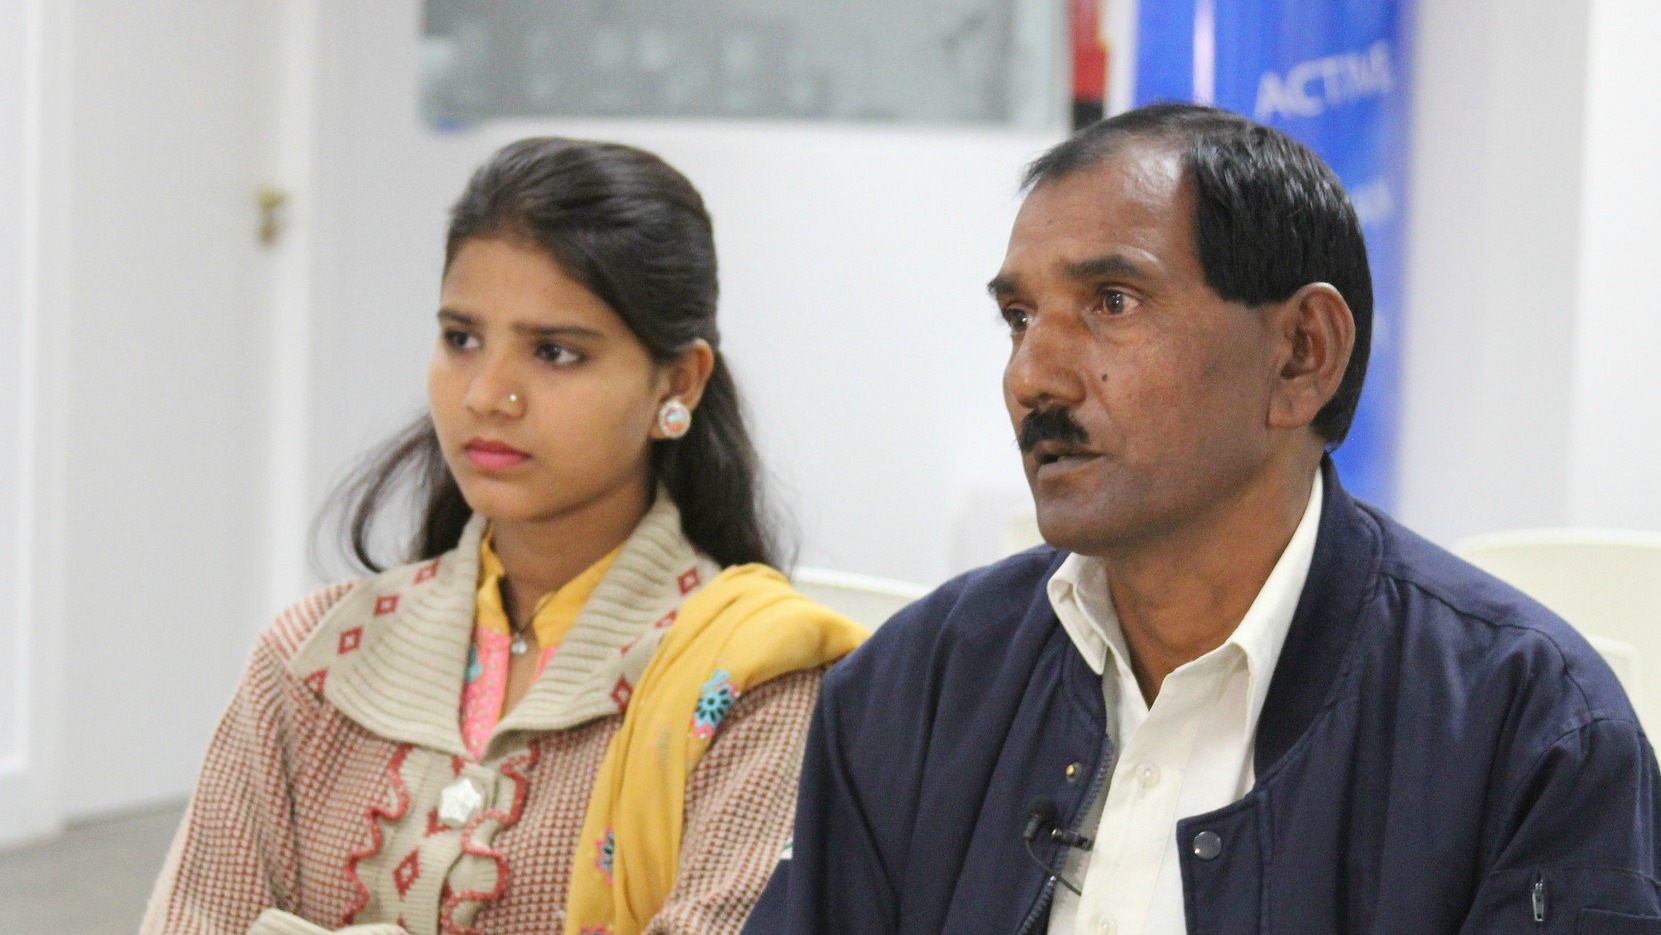 La famille d'Asia Bibi attend avec inquiétude l'issue de la procédure judiciaire | © HazteOir.org/Flickr/CC BY-SA 2.0